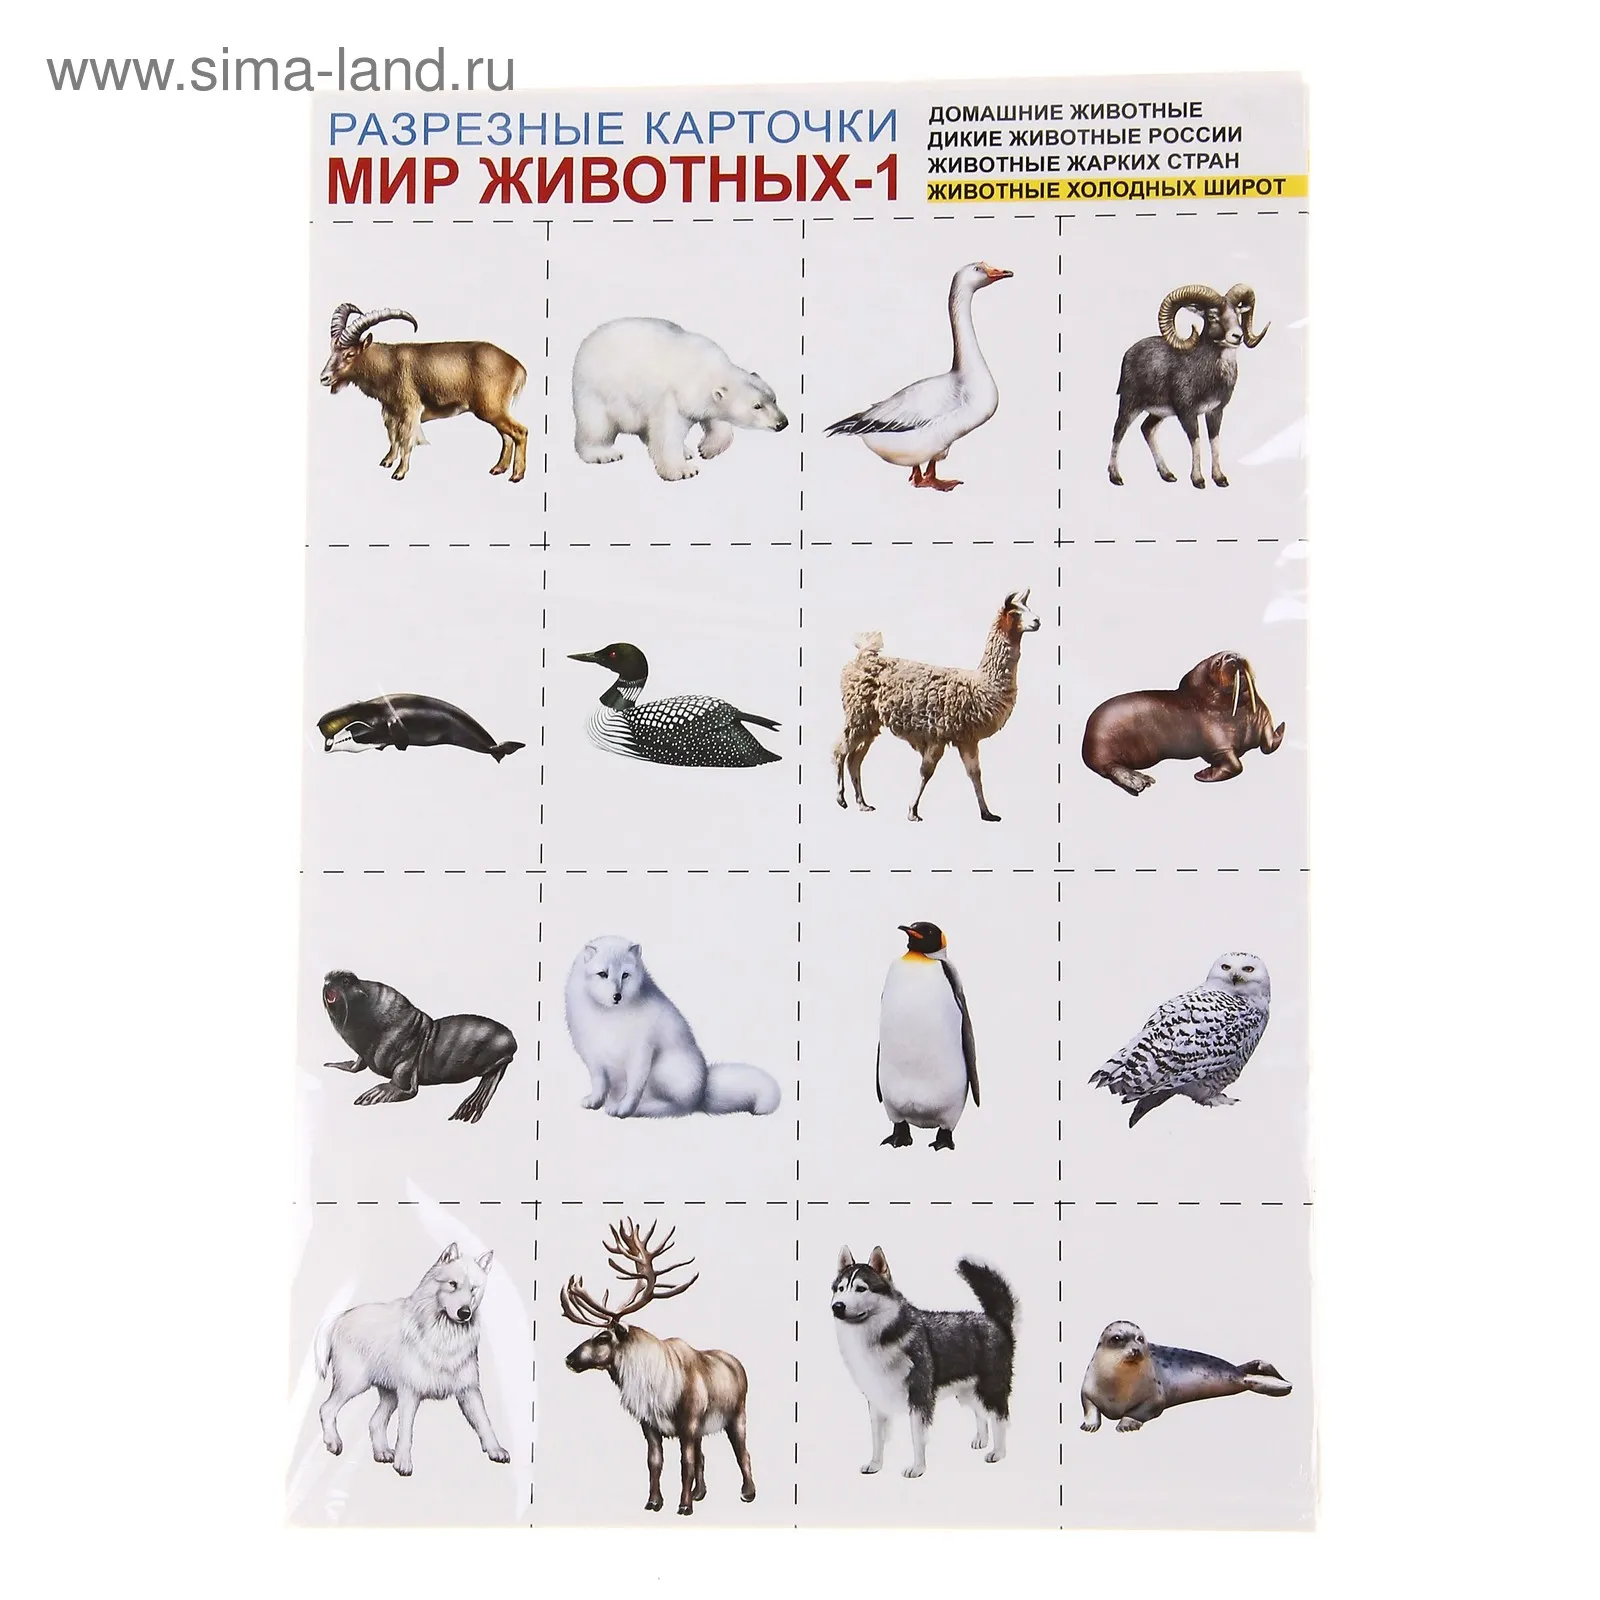 Разрезные карточки мир животных. Дикие животные севера. Животные севера карточки для детей. Звери и птицы холодных стран. Карточки обитатели